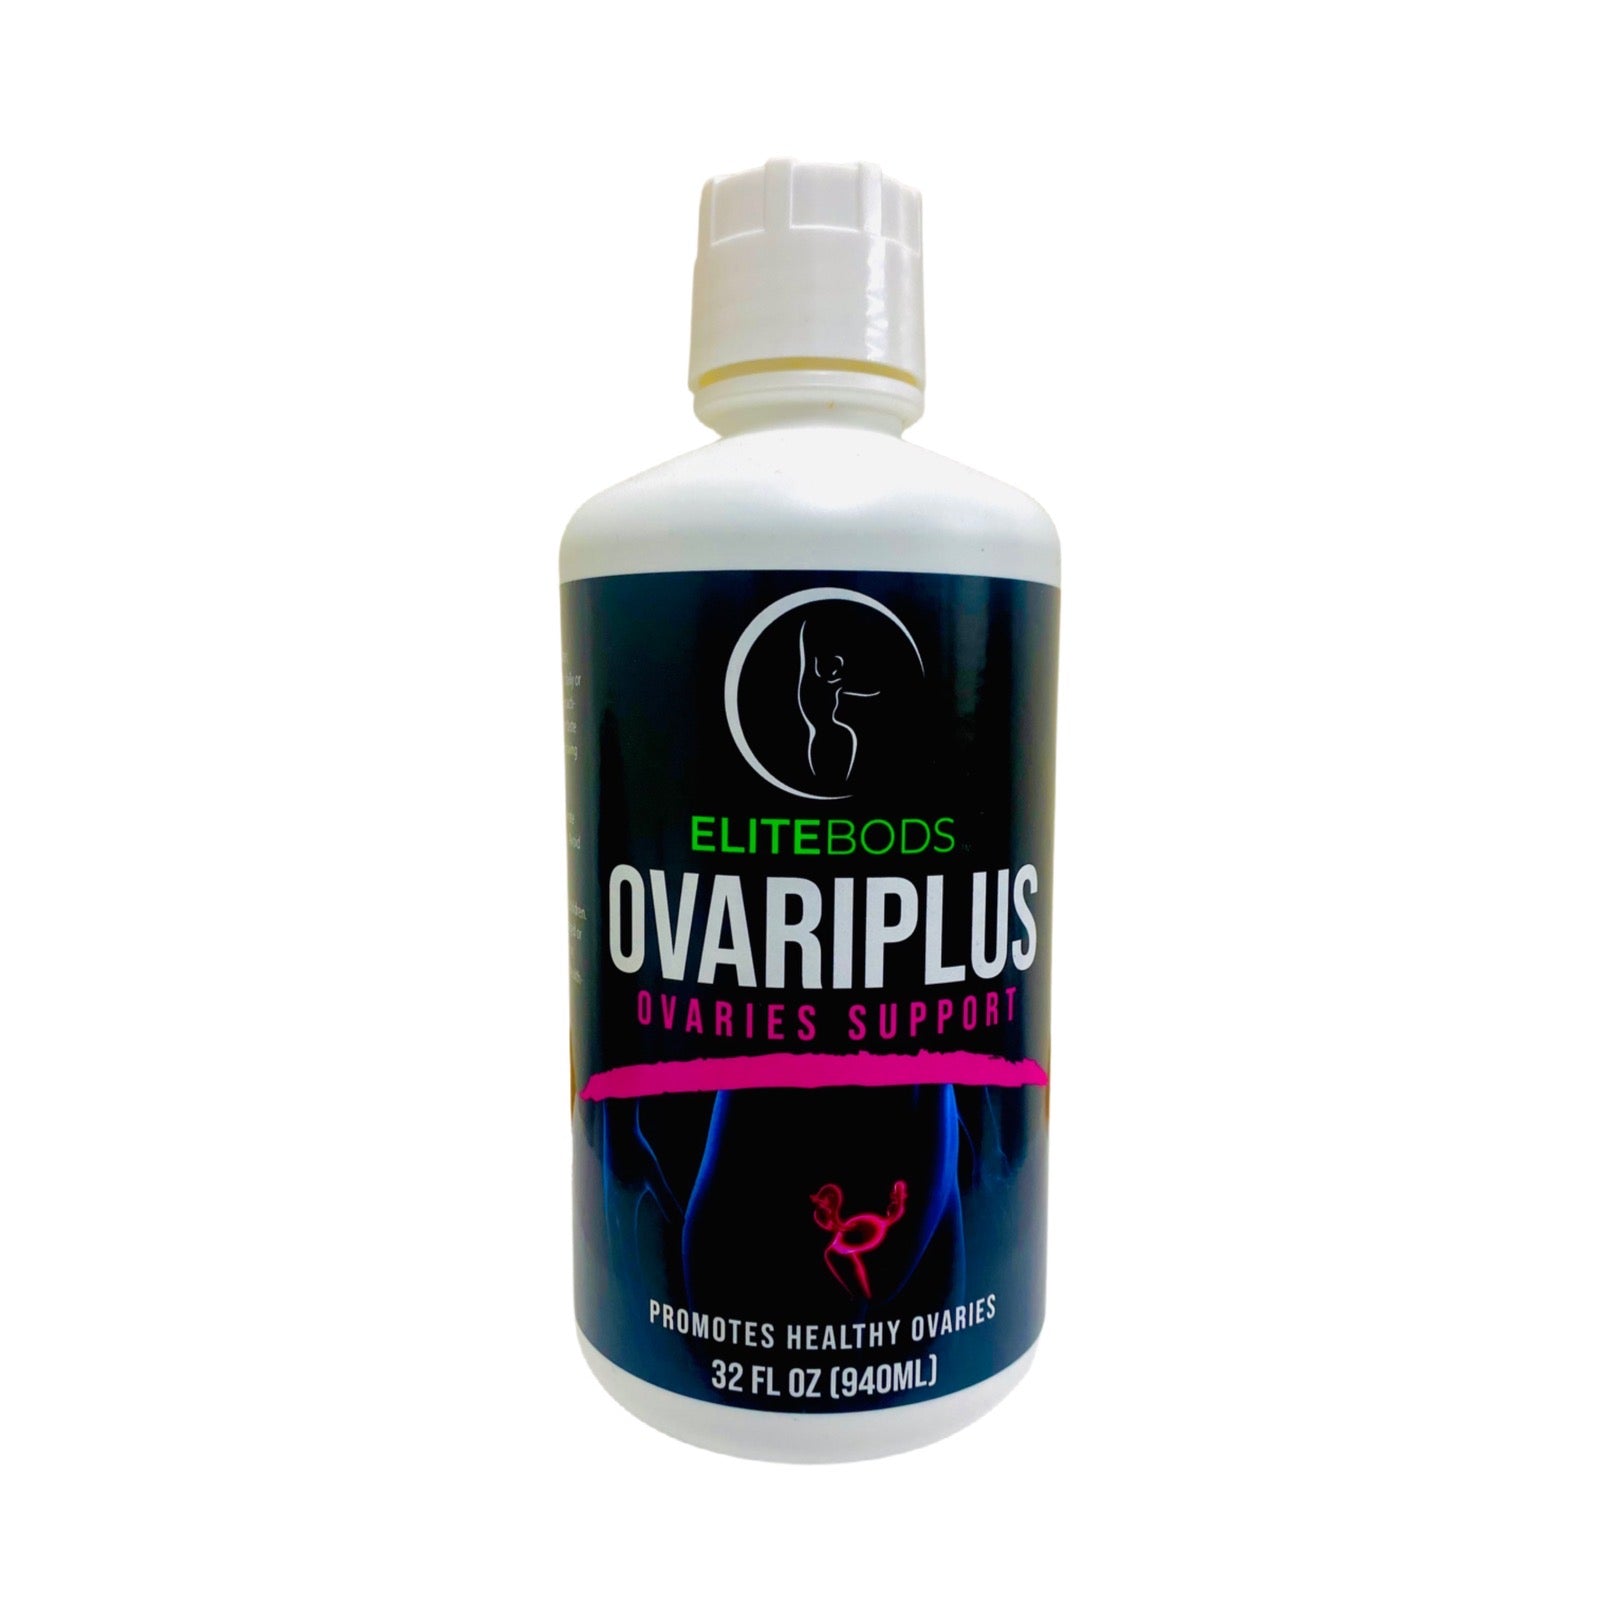 Ovariplus